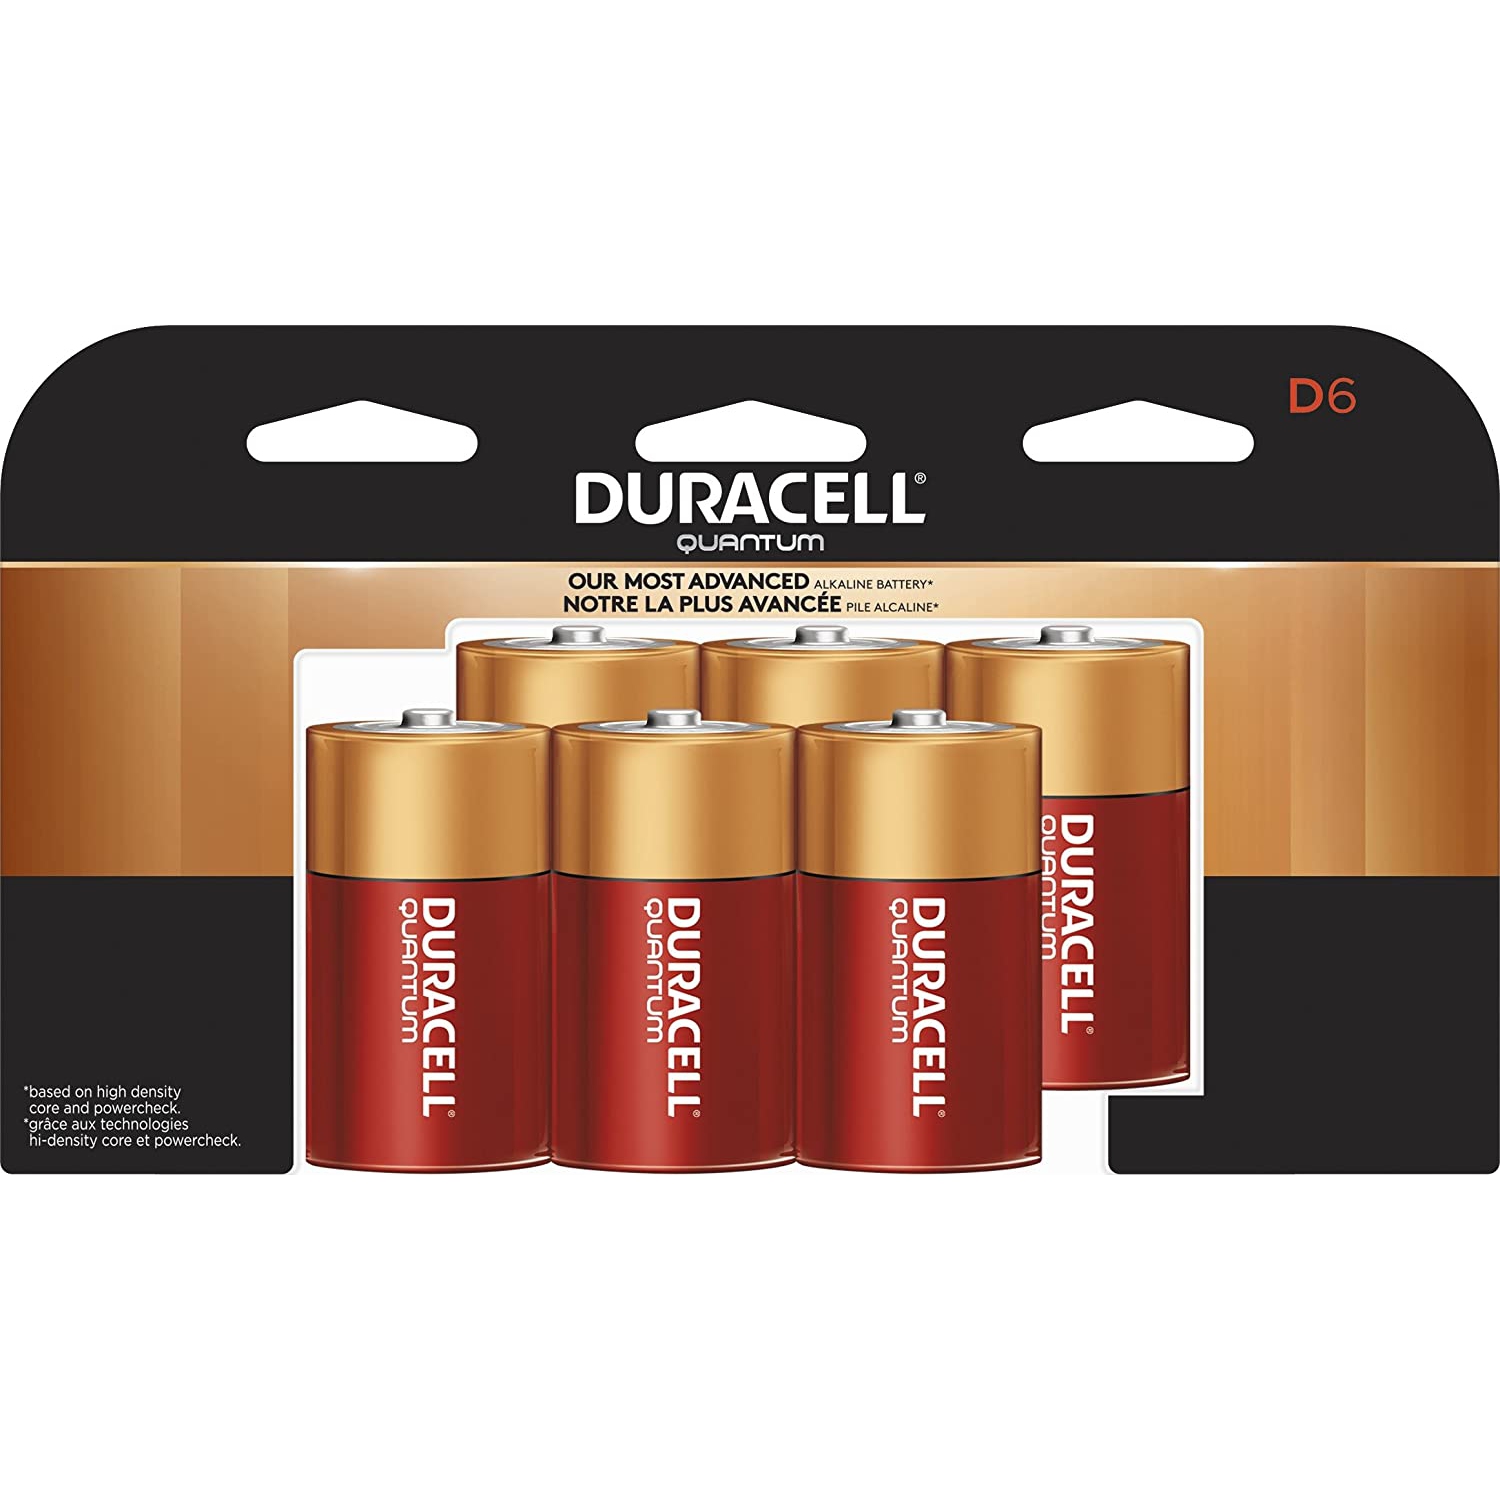 D batteries. D Battery. Long-lasting photo Batteries.